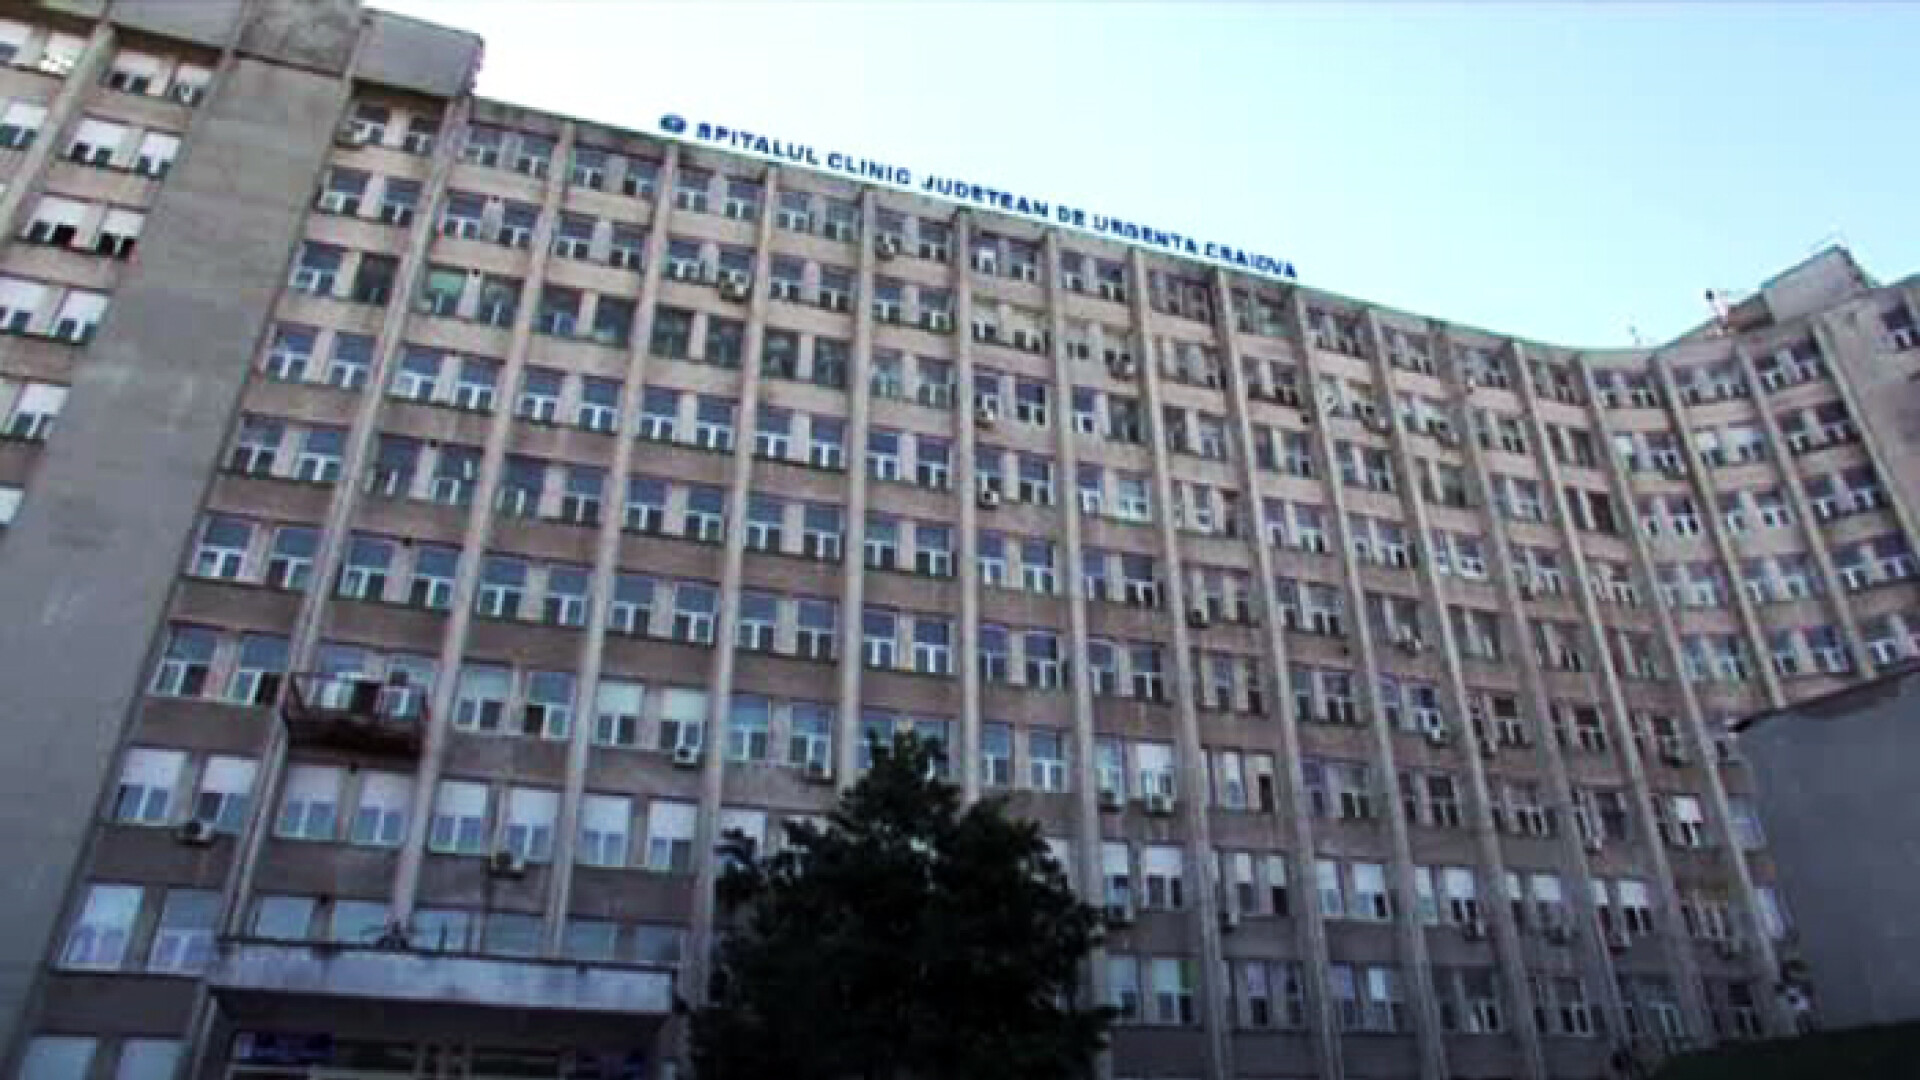 Spitalul judetean din Craiova